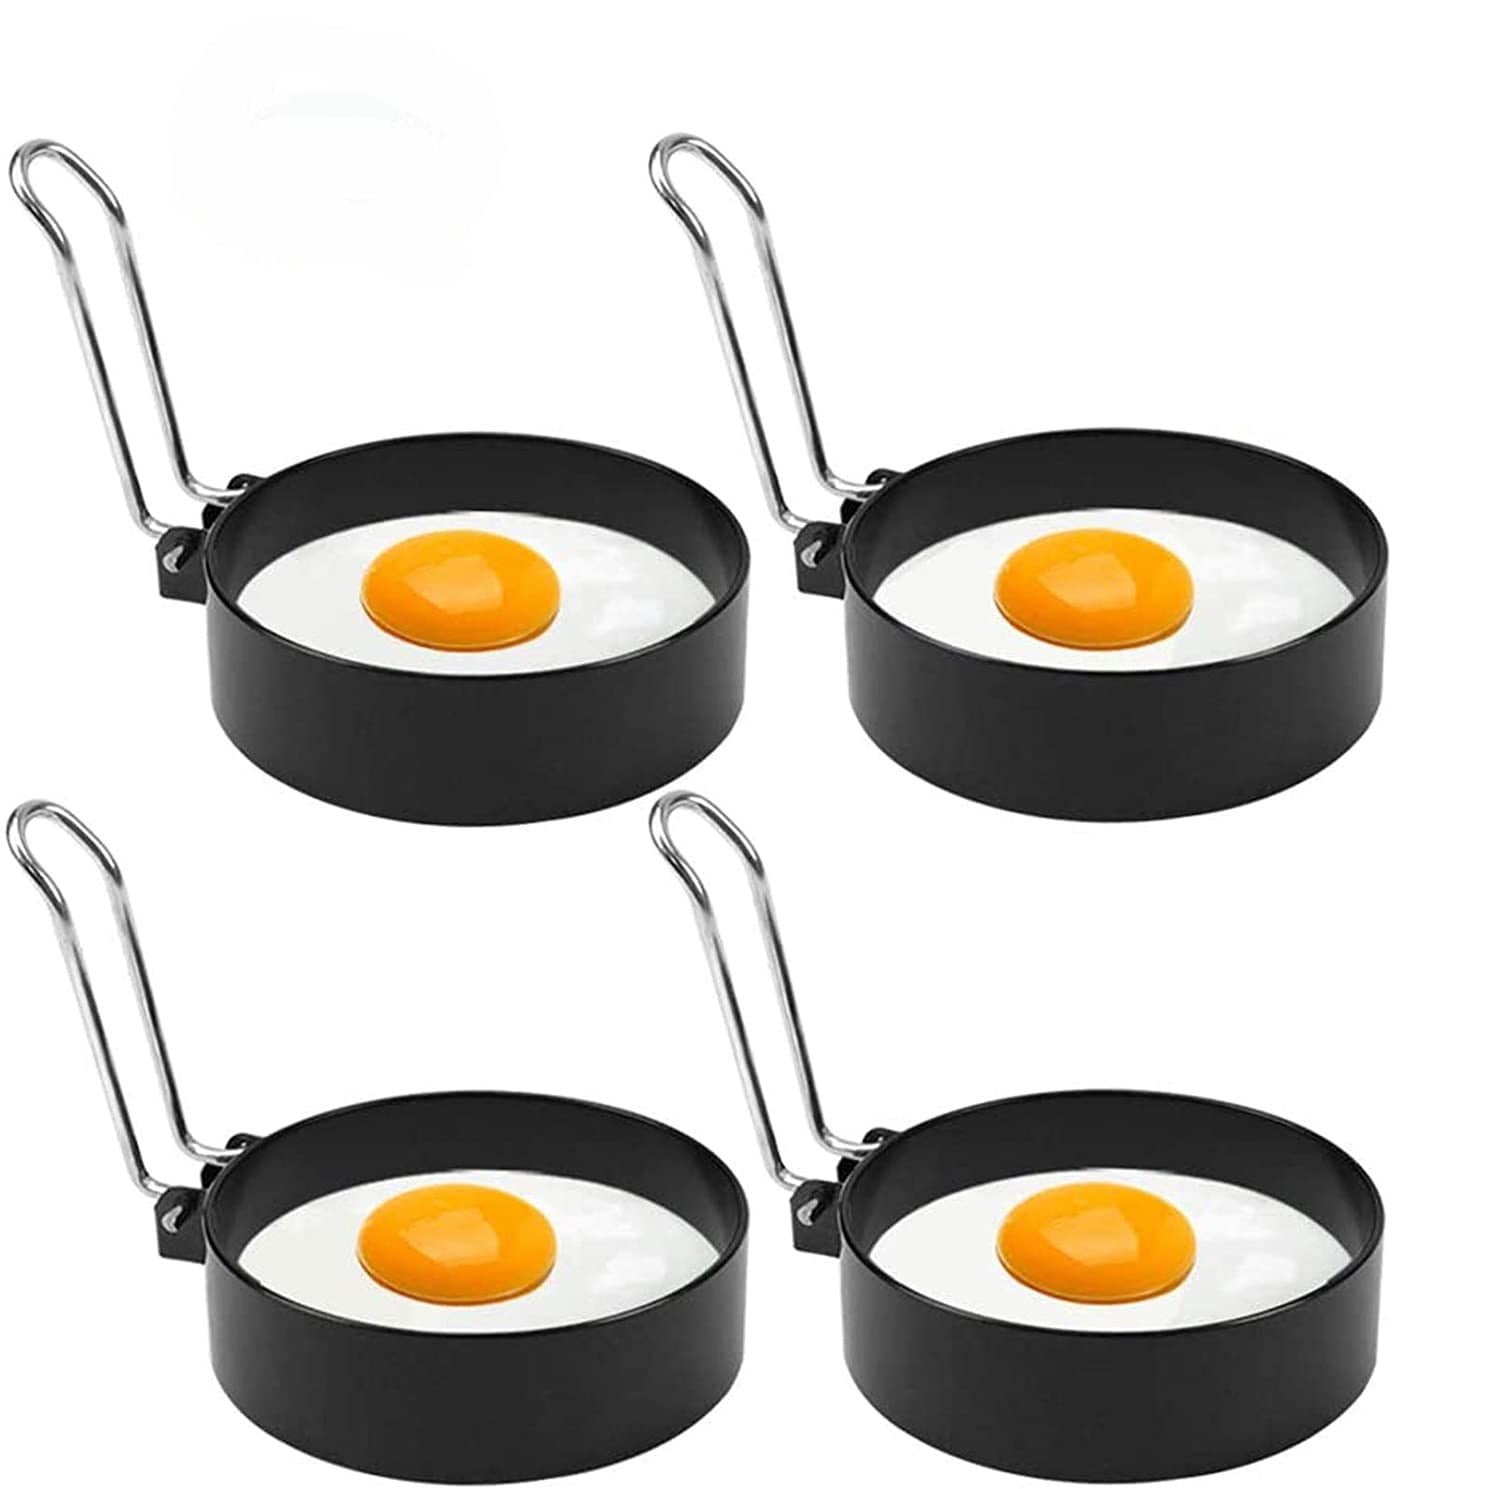 Stainless Steel Egg Ring,2 Pack Round Breakfast Household Mold